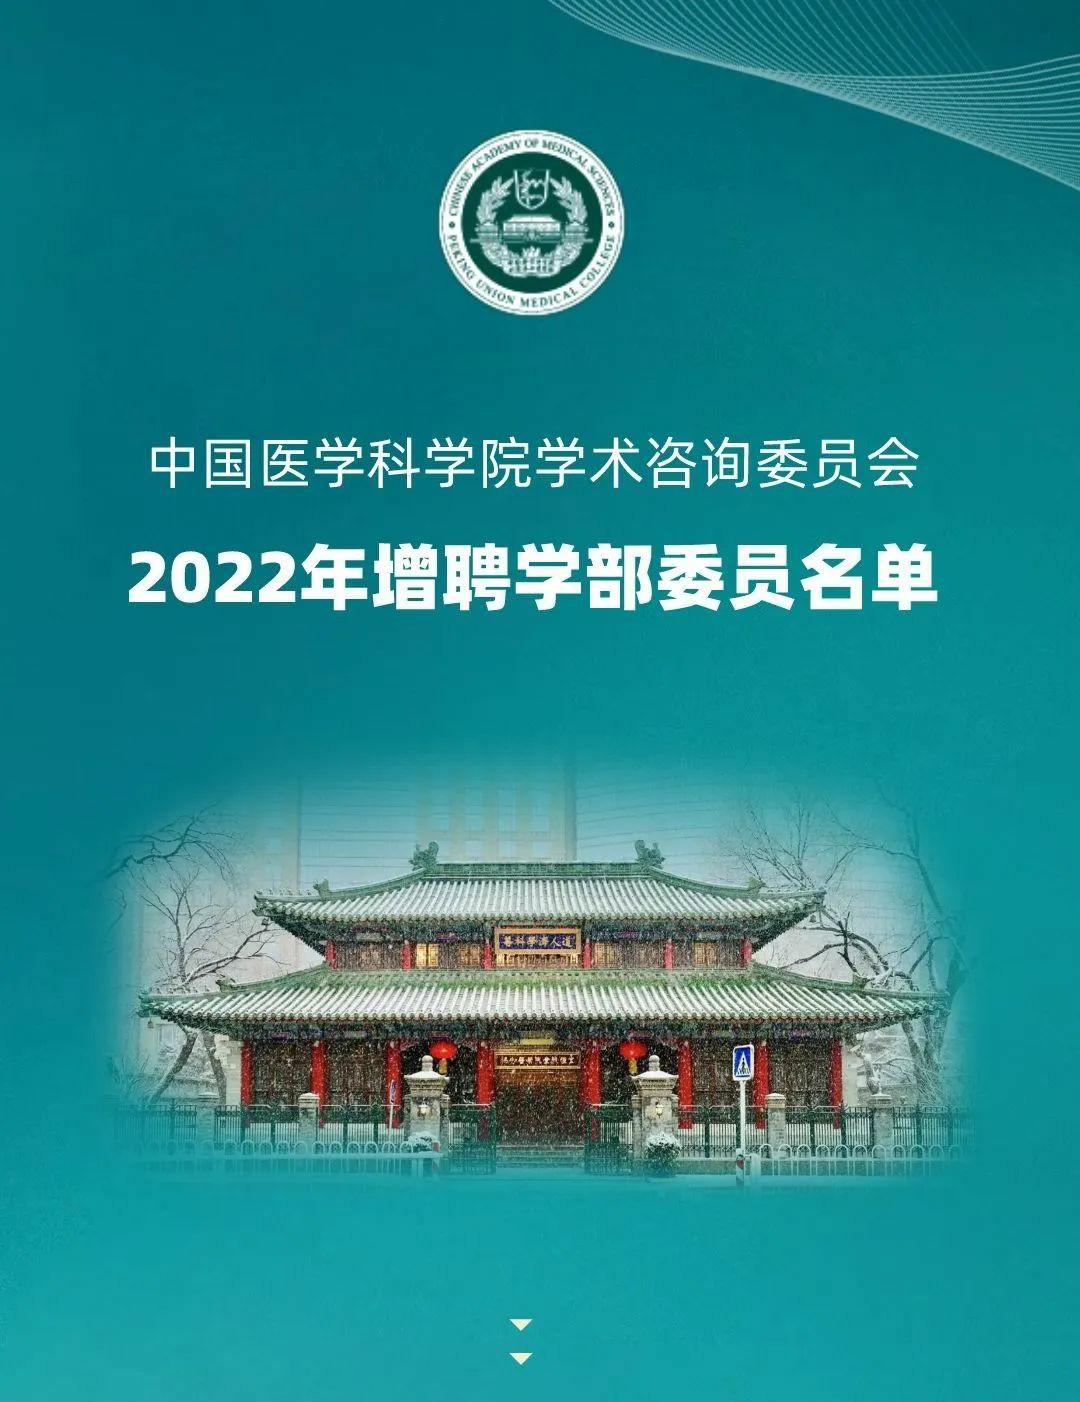 2022年度中国医学科学院<font color="red">学术</font>咨询<font color="red">委员会</font>增聘学部<font color="red">委员</font>名单发布